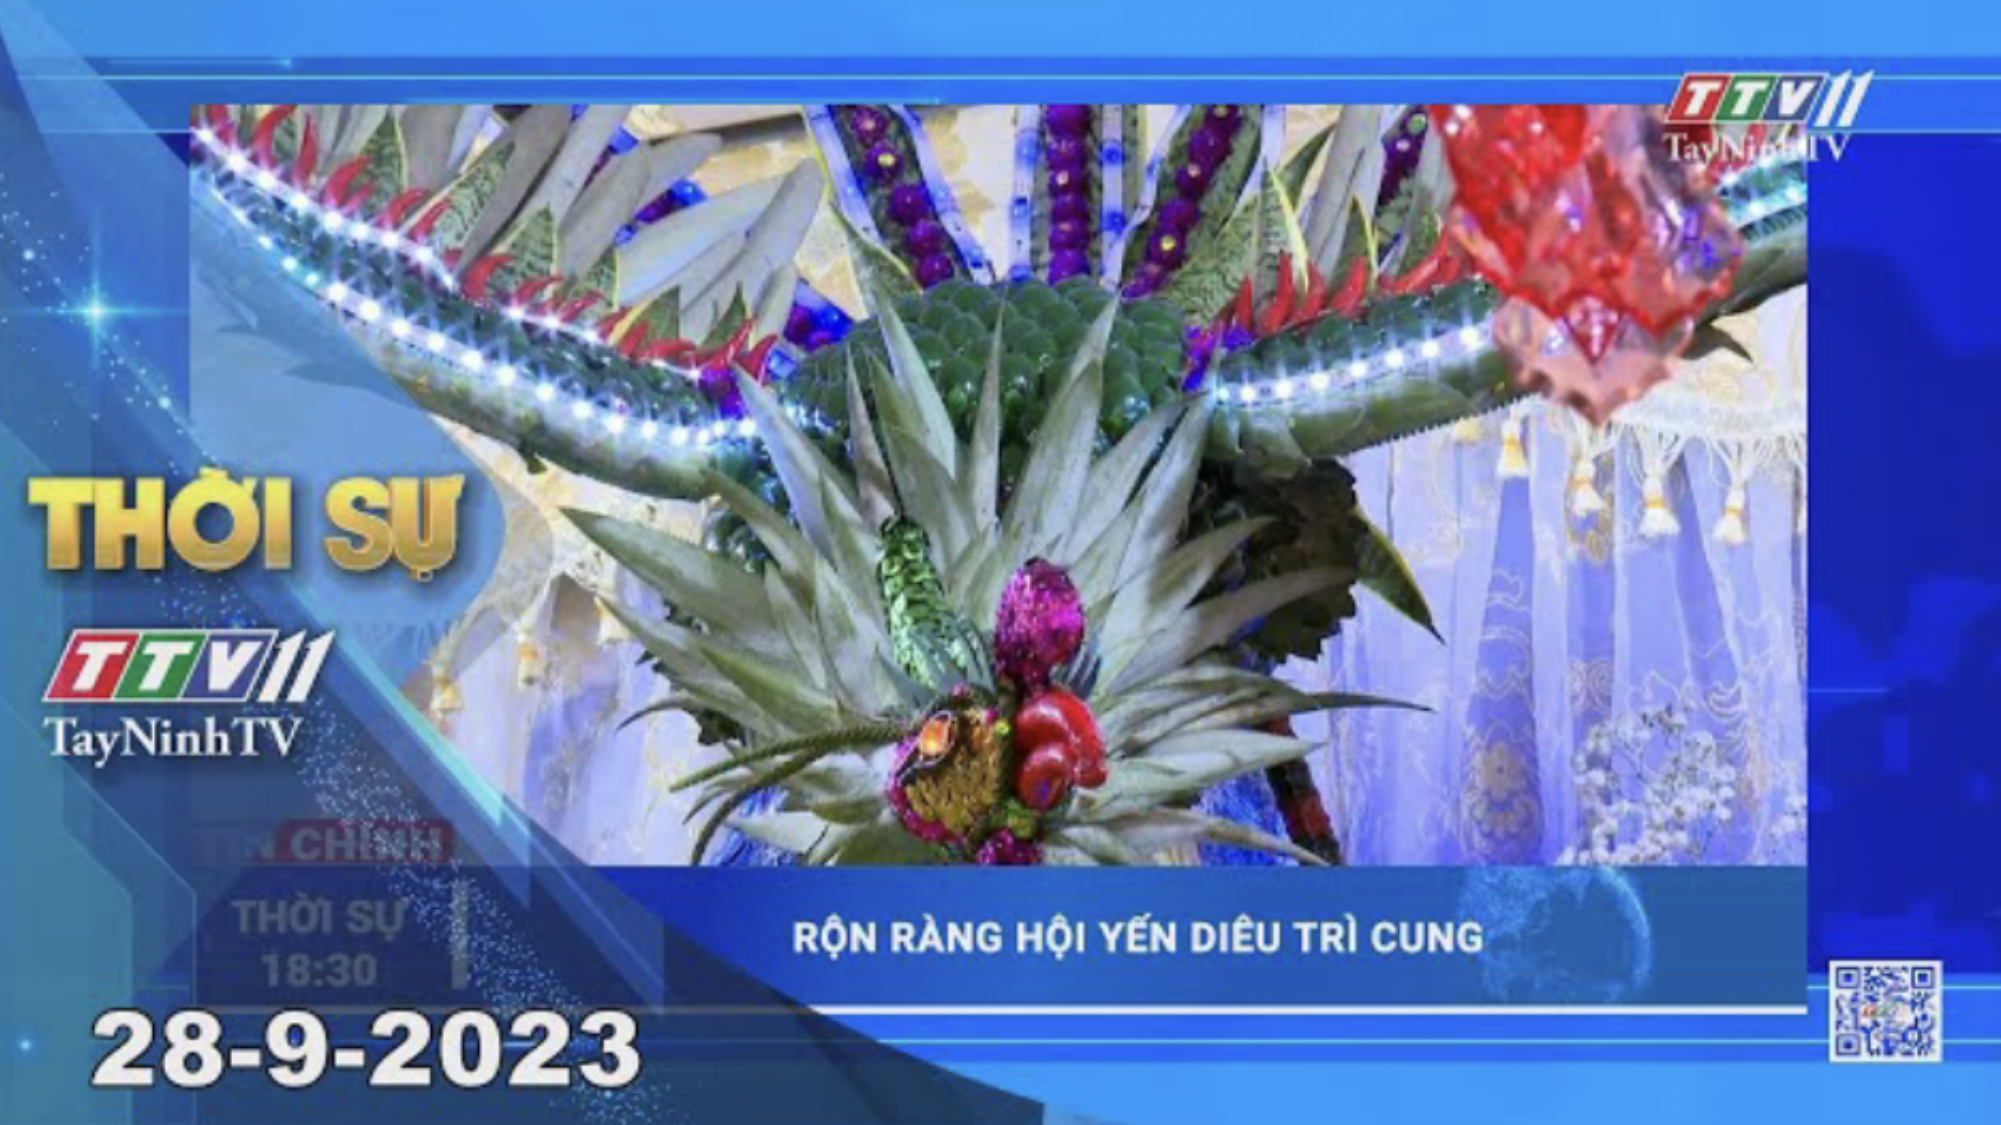 Thời sự Tây Ninh 28-9-2023 | Tin tức hôm nay | TayNinhTV